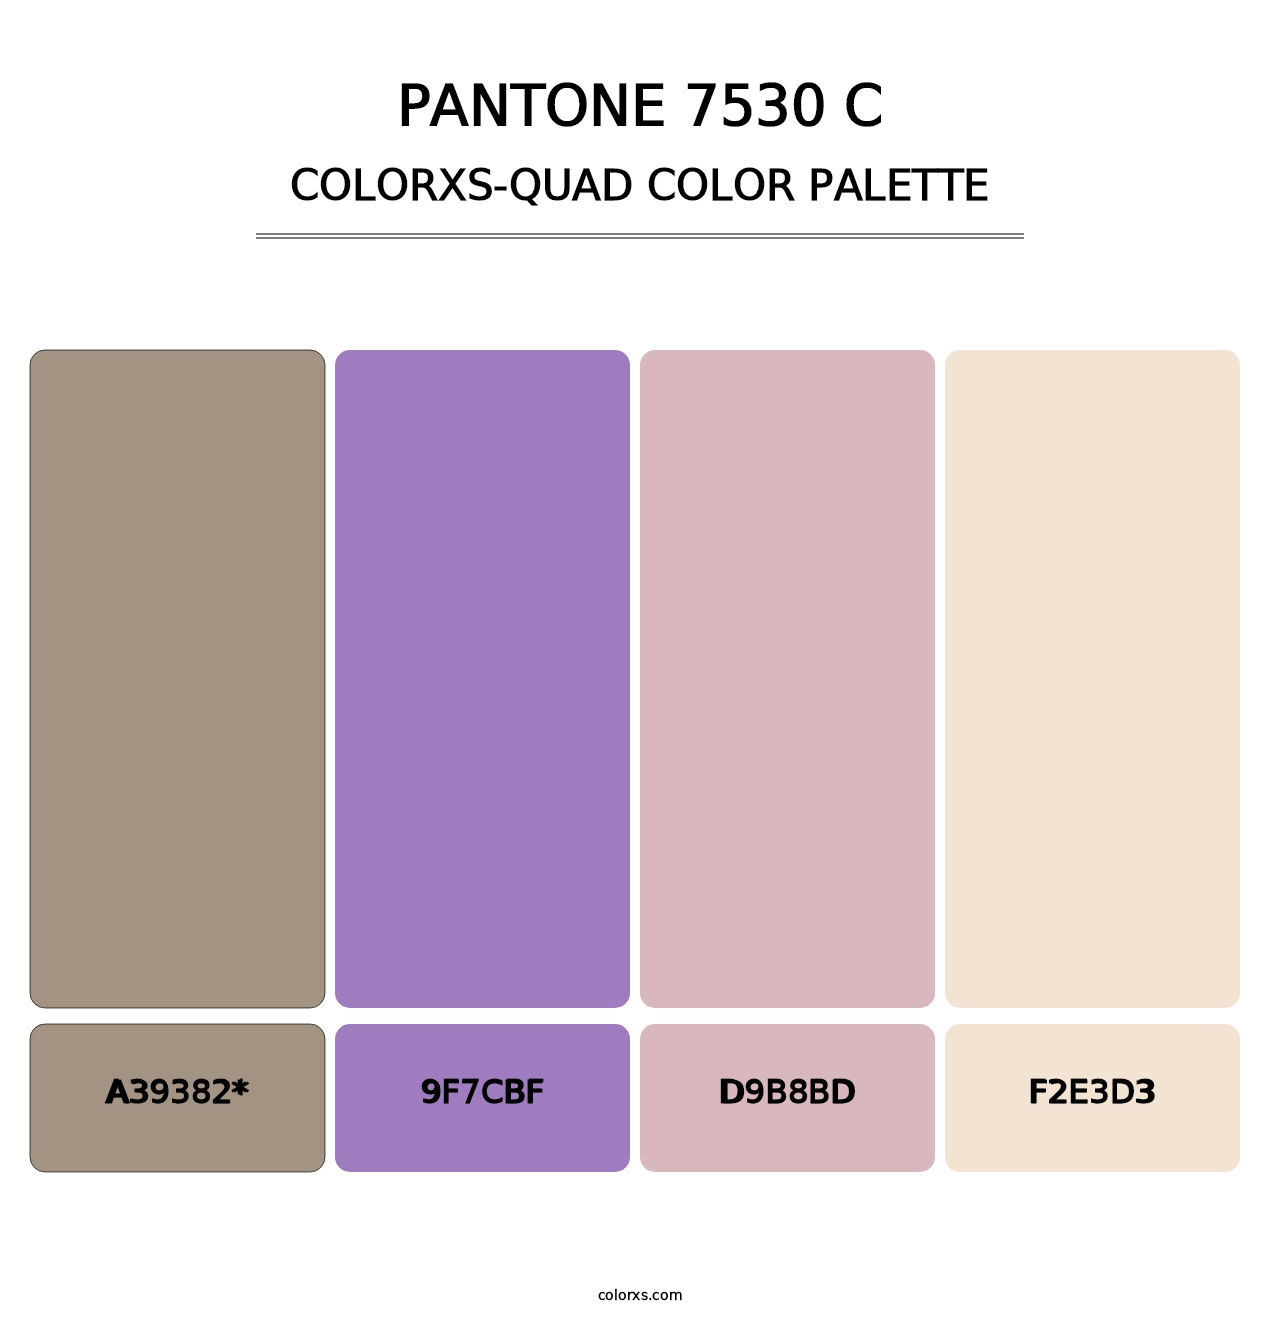 PANTONE 7530 C - Colorxs Quad Palette